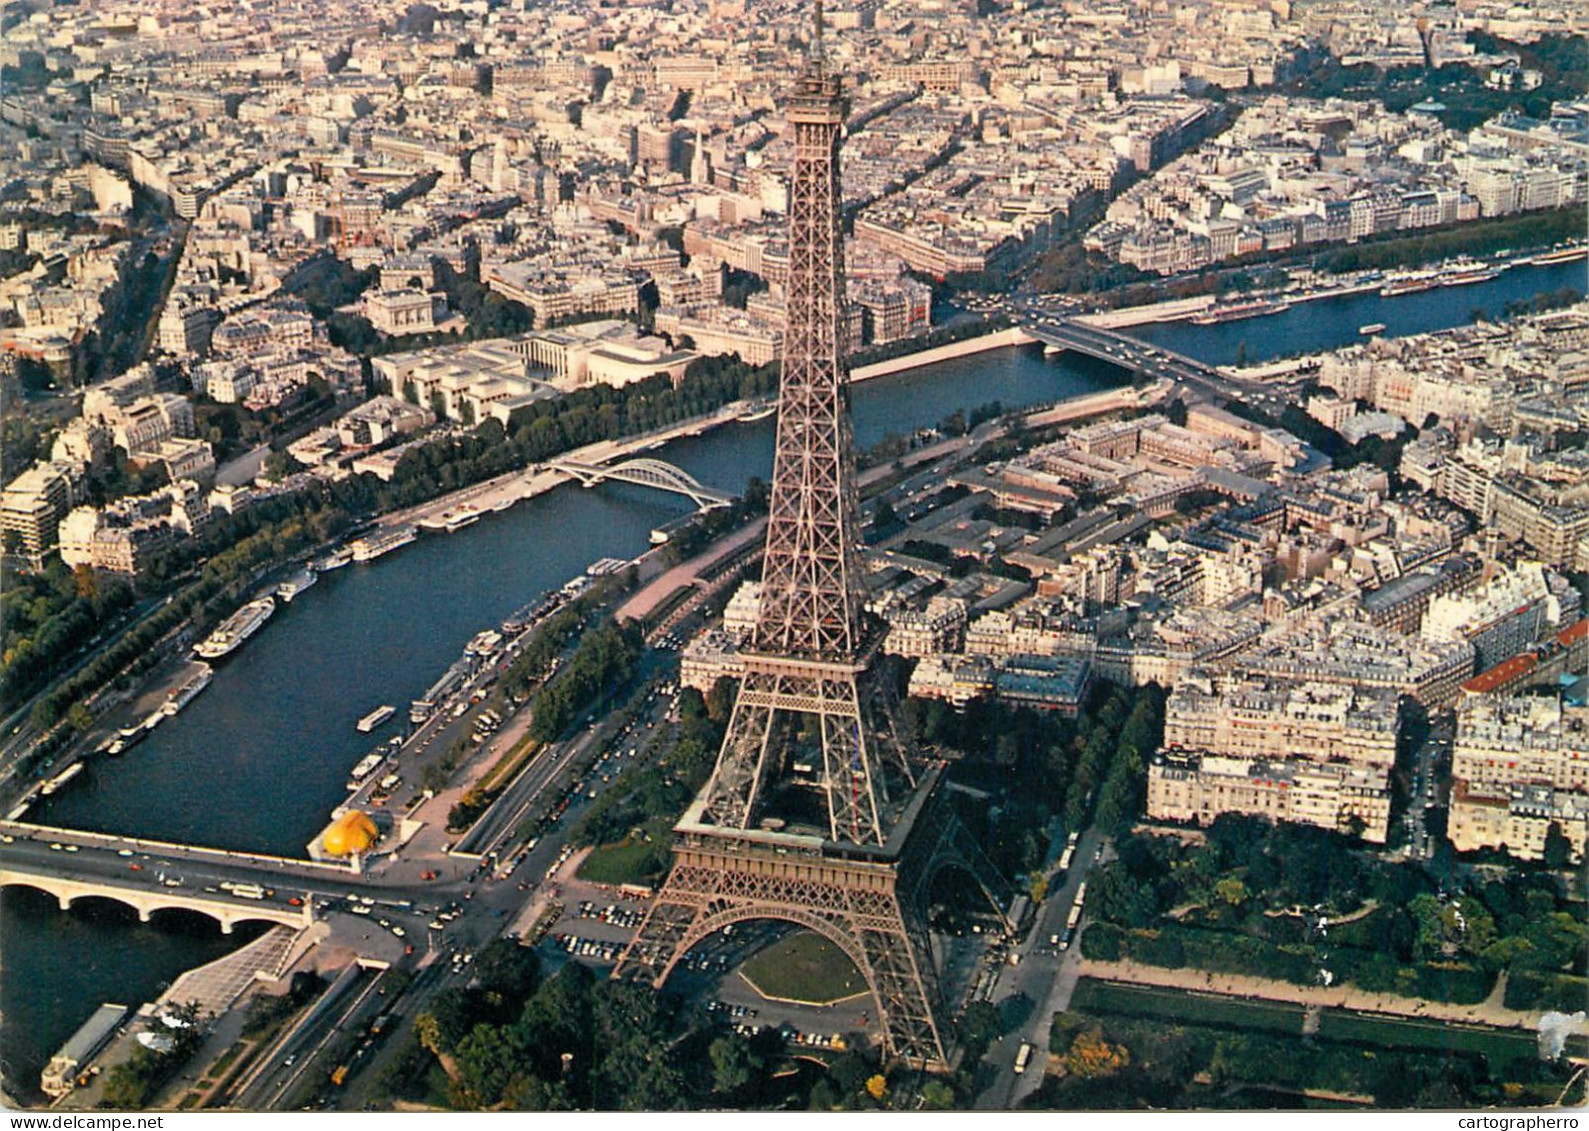 Navigation Sailing Vessels & Boats Themed Postcard Paris Tour Eiffel Aerial - Sailing Vessels